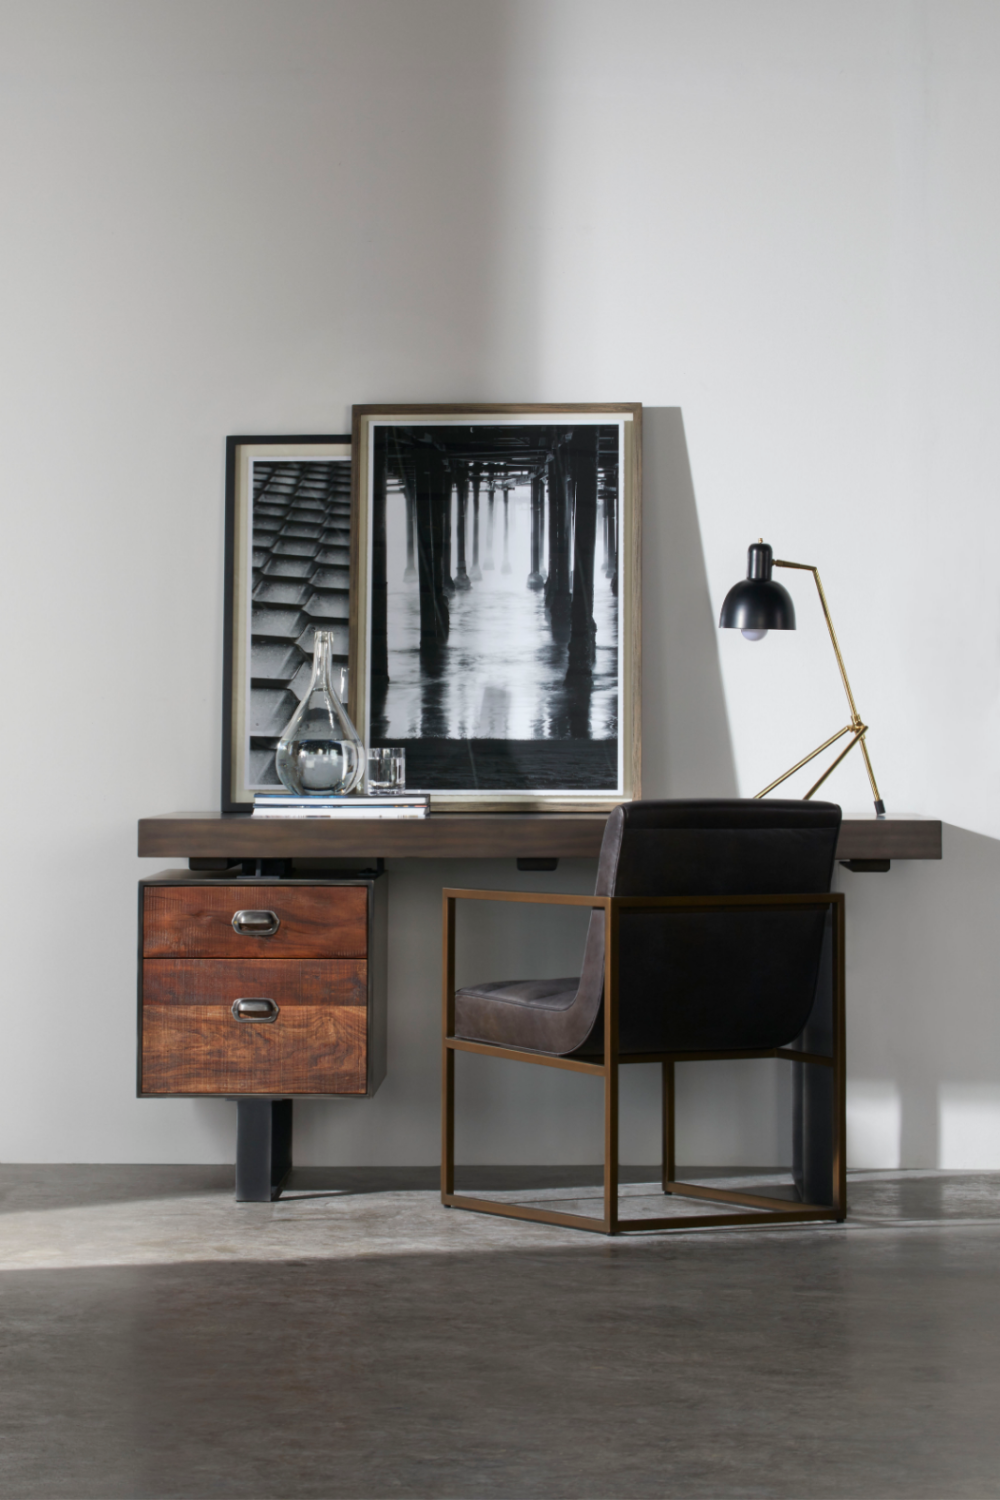 Parisian Style Table Lamp | Andrew Martin Rivoli | Oroa.com